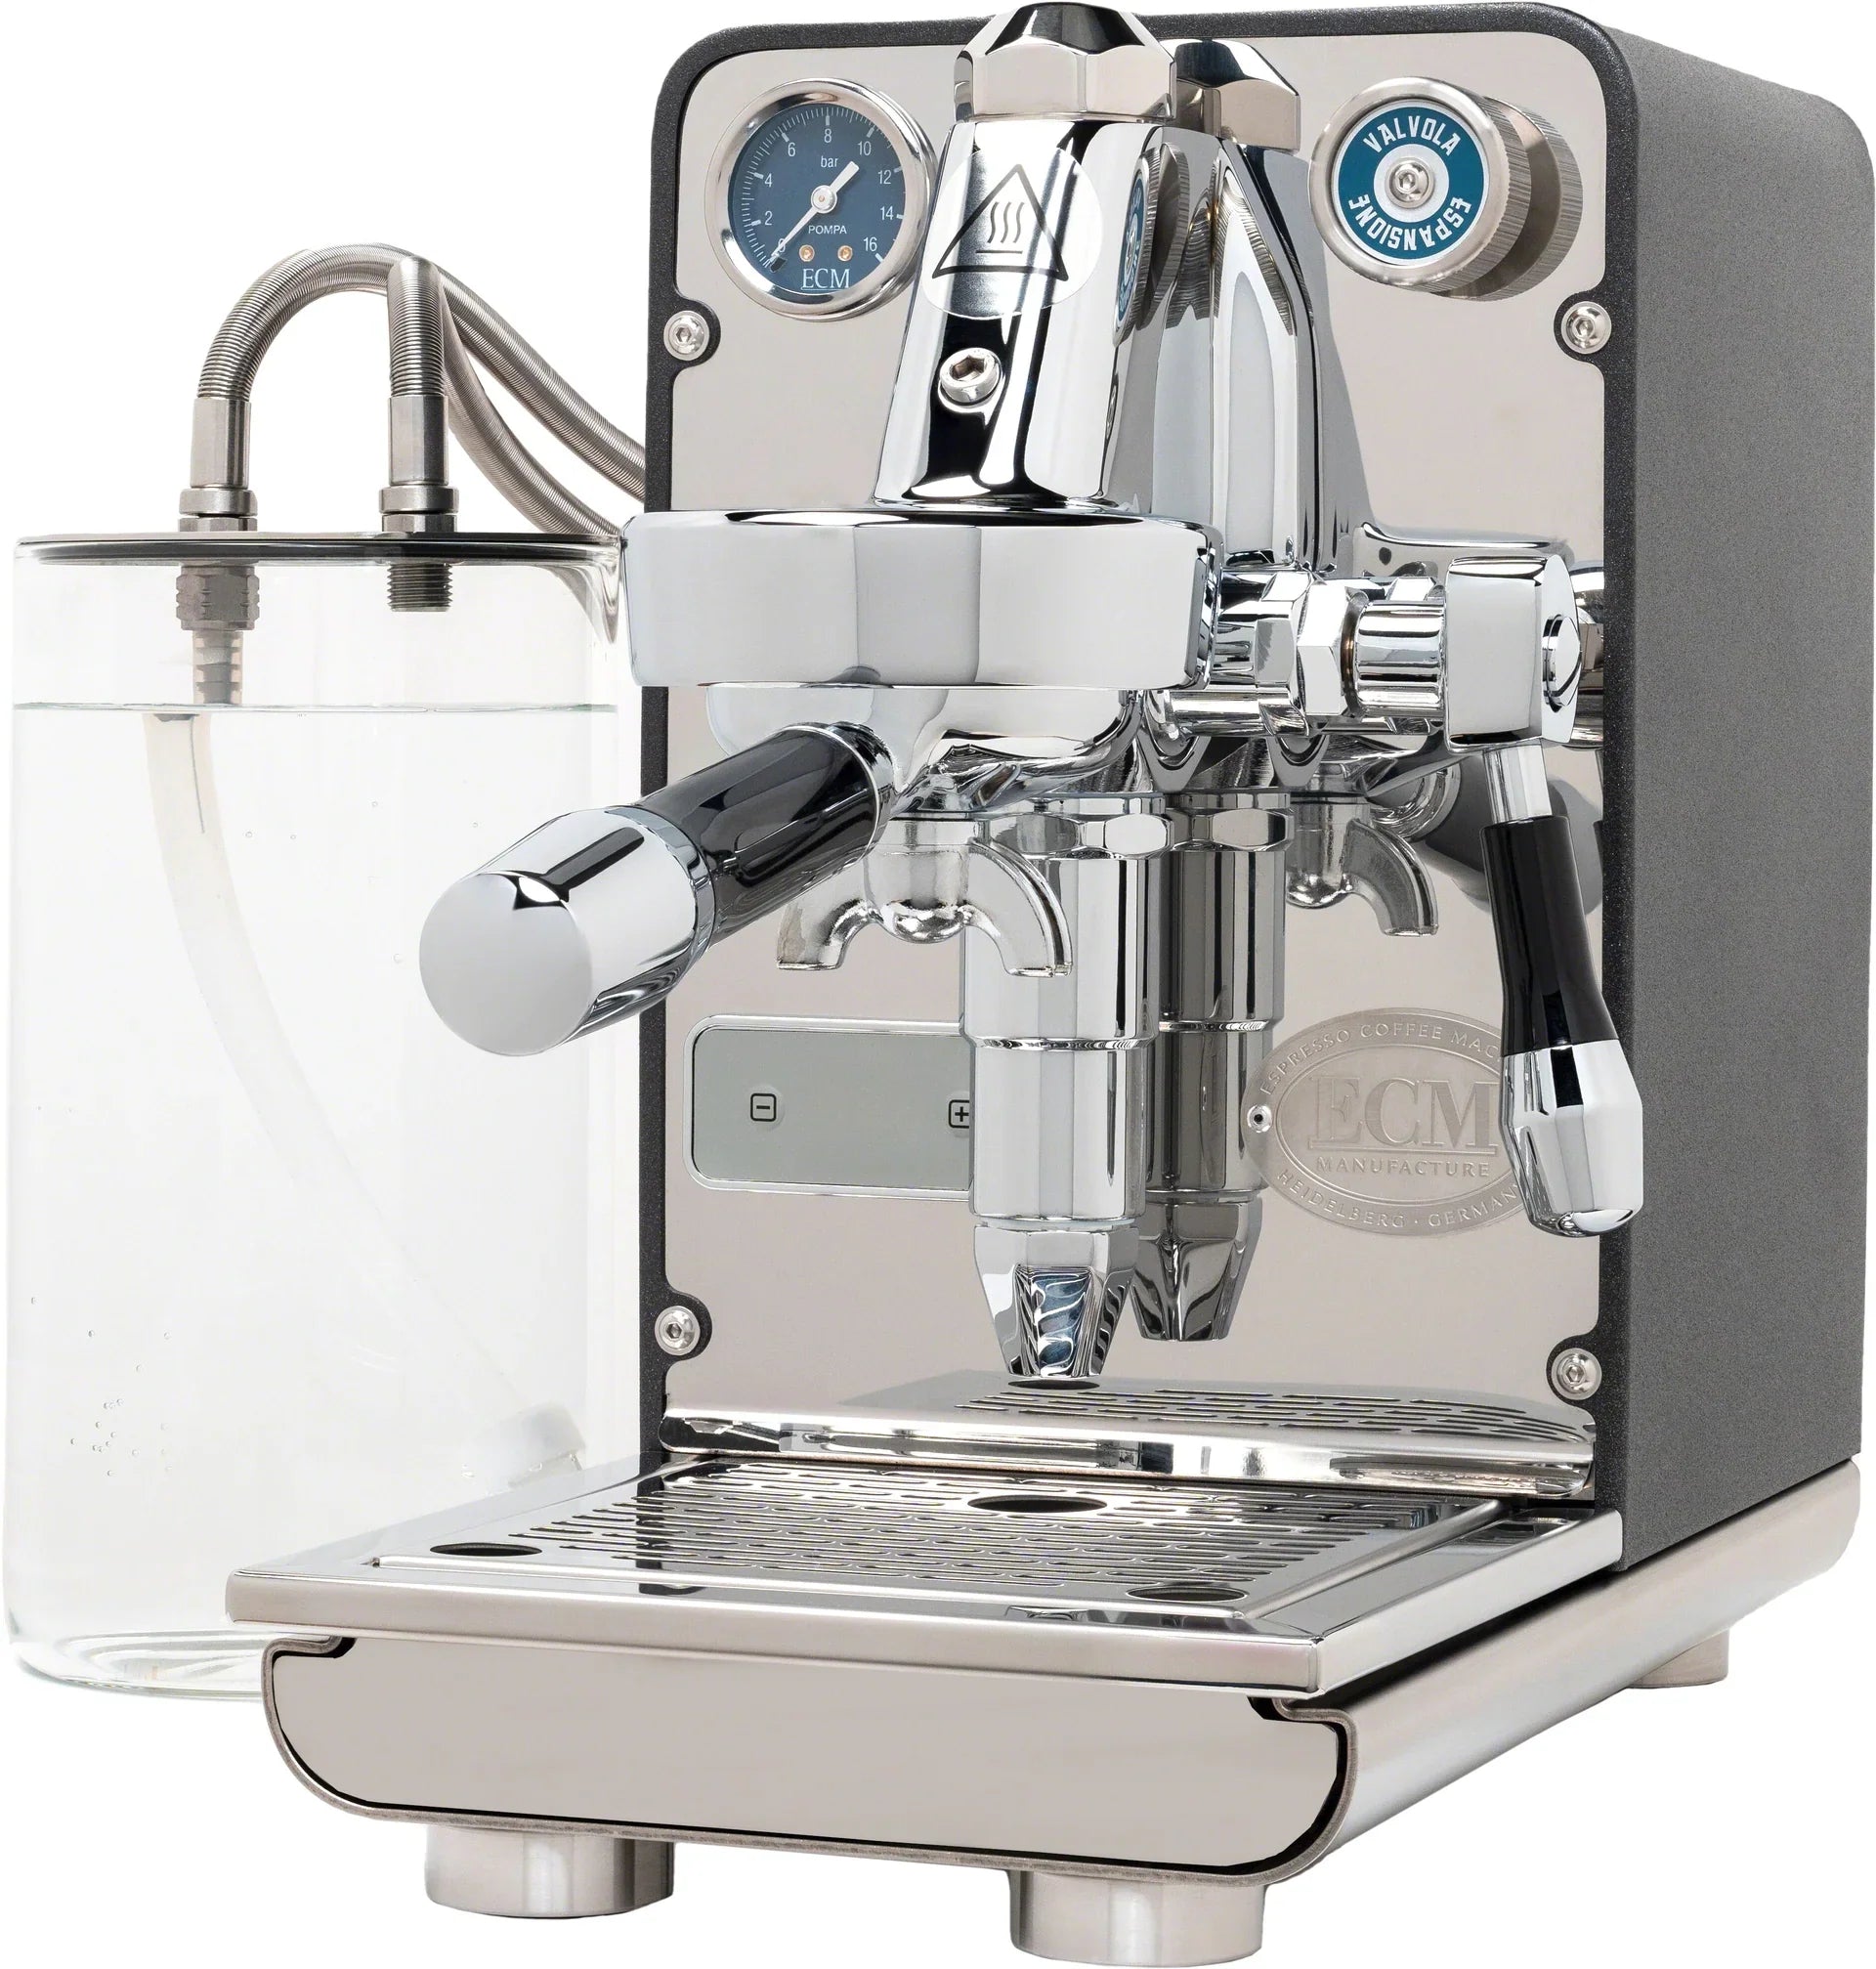 ECM - Puristika Espresso Machine - Open Box